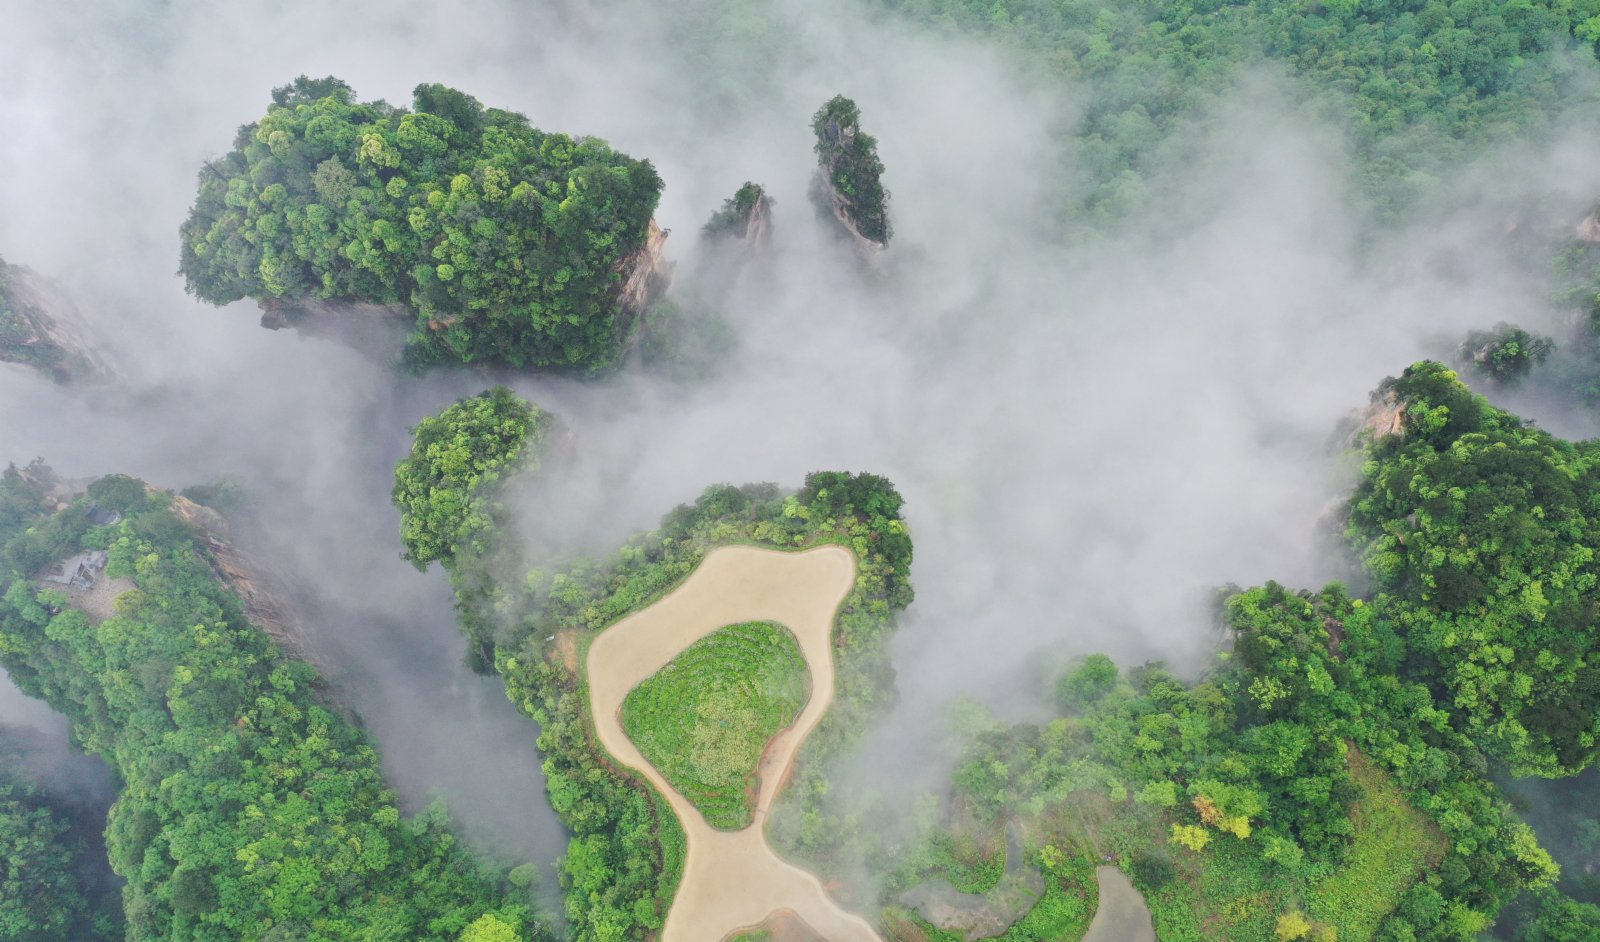 這是5月14日拍攝的張家界武陵源景區峰林雲海景觀。